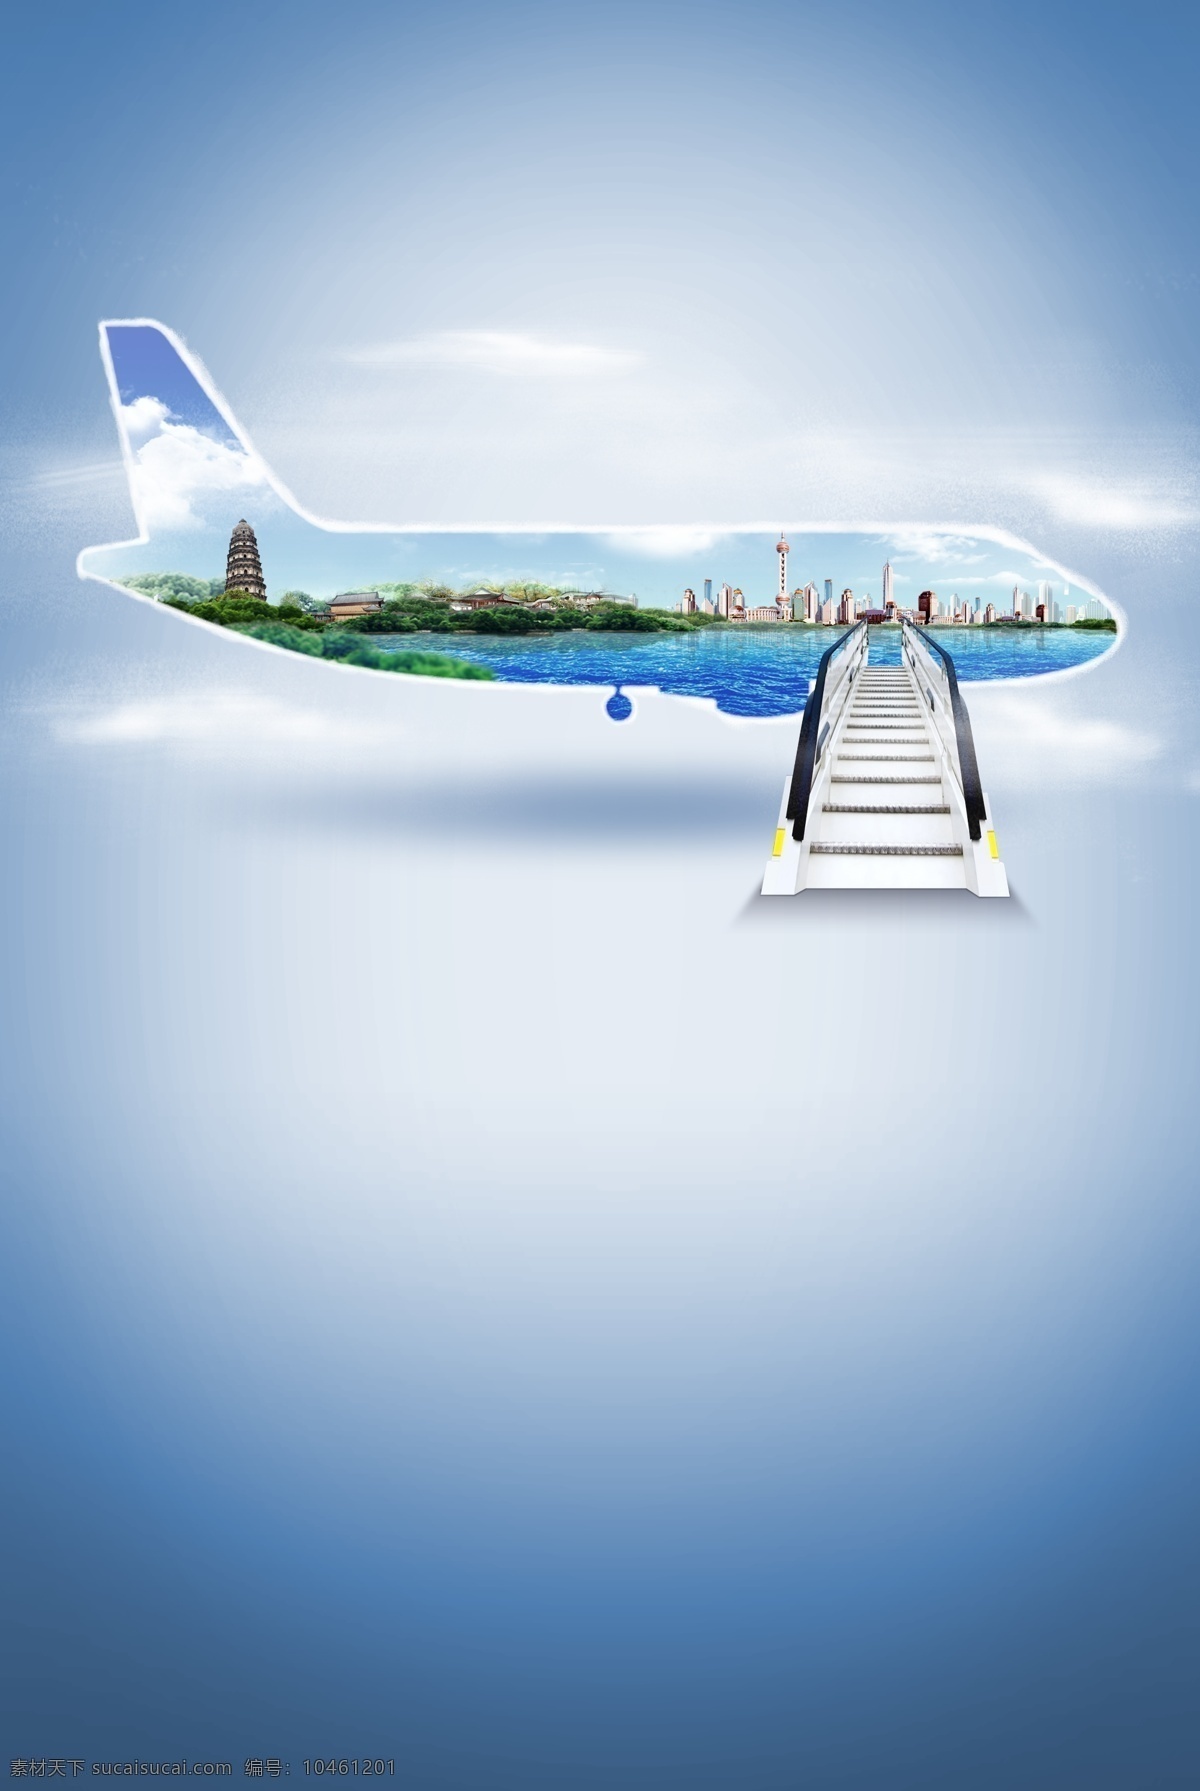 旅游 创意 飞机 合 图 背景 创意旅游背景 创意飞机合图 西安上海旅游 纯净质感旅游 创意和图背景 招贴设计